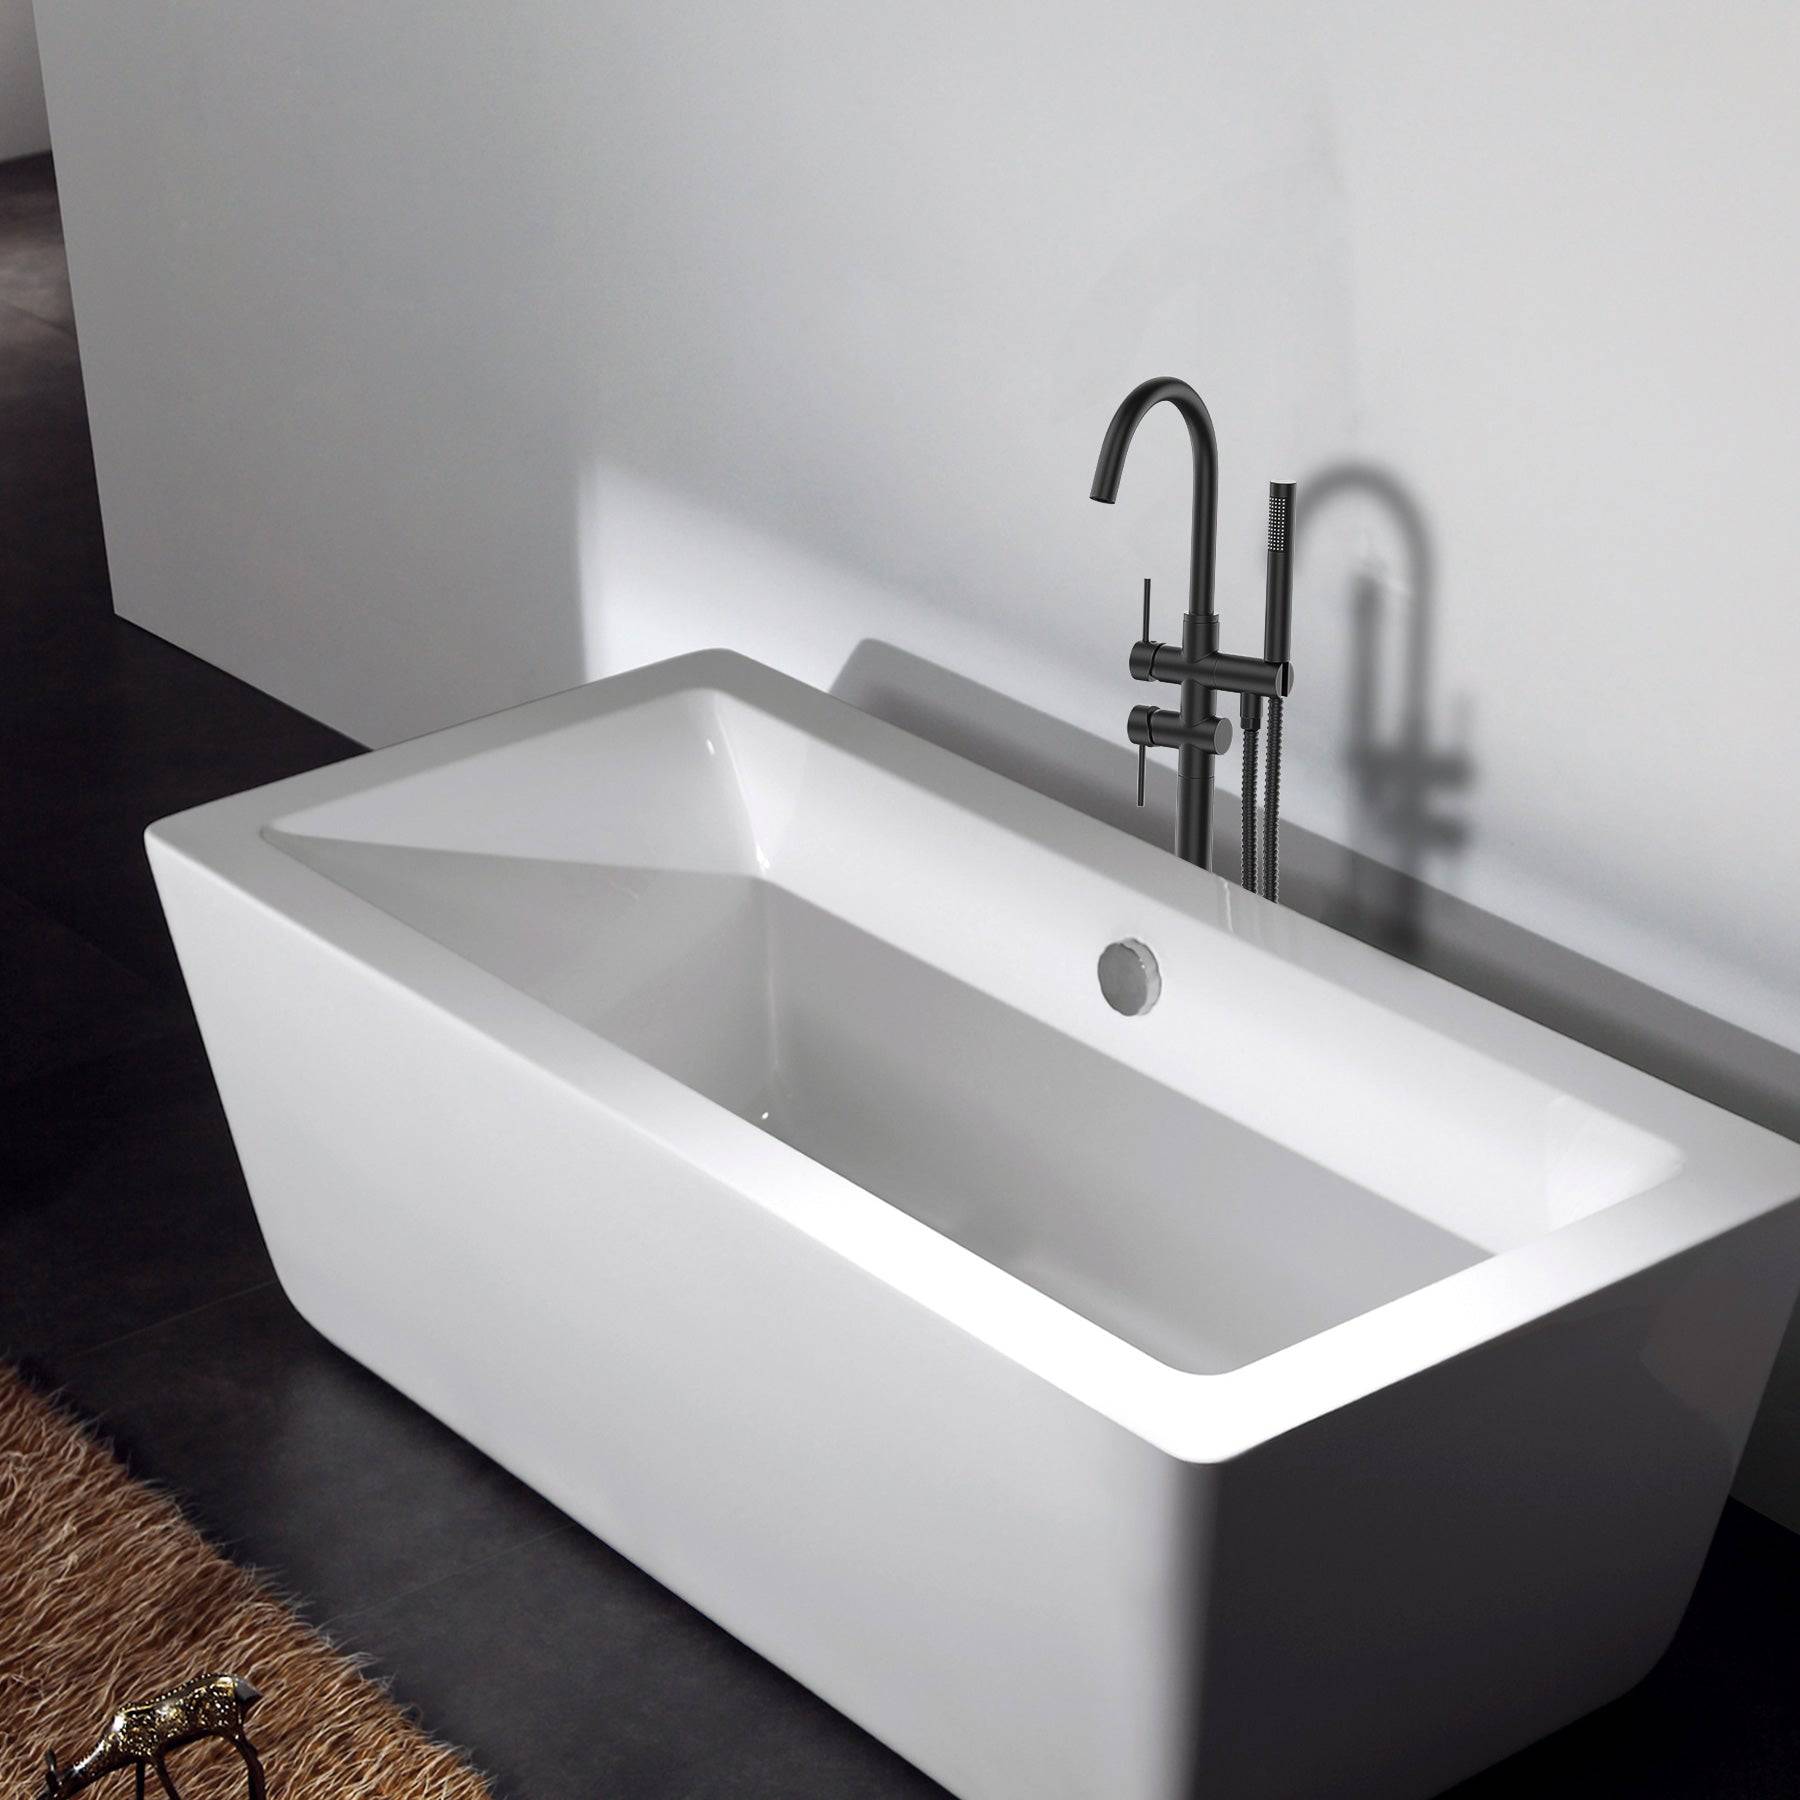 Venetio Double Handle Floor Mounted Freestanding Tub Filler Clawfoot Faucet With Hand Shower - Venetio